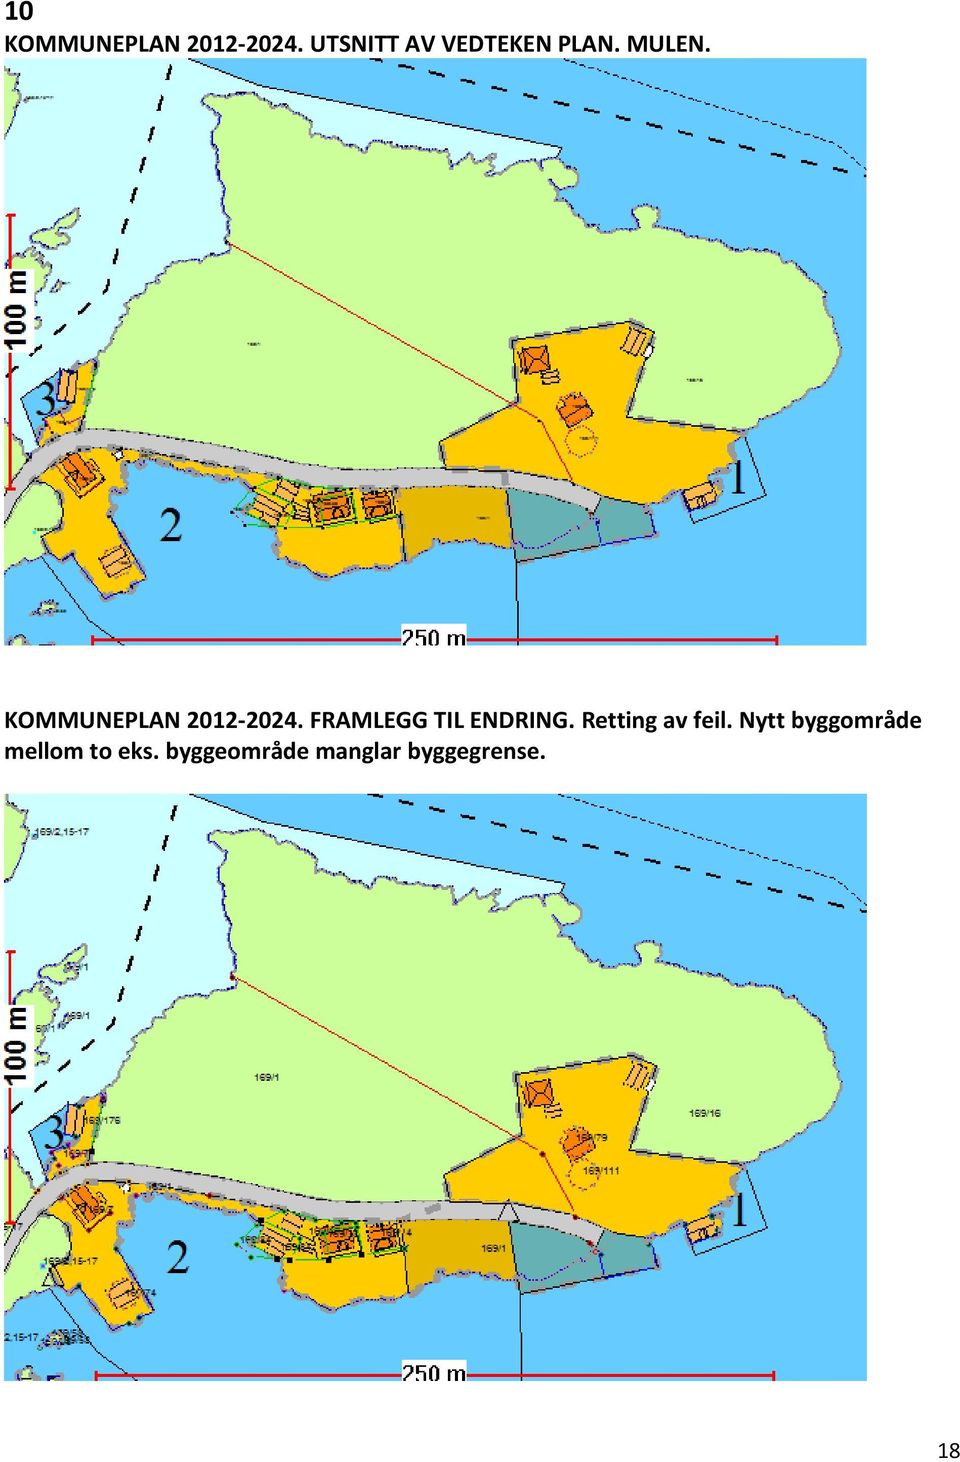 KOMMUNEPLAN 2012-2024. FRAMLEGG TIL ENDRING.